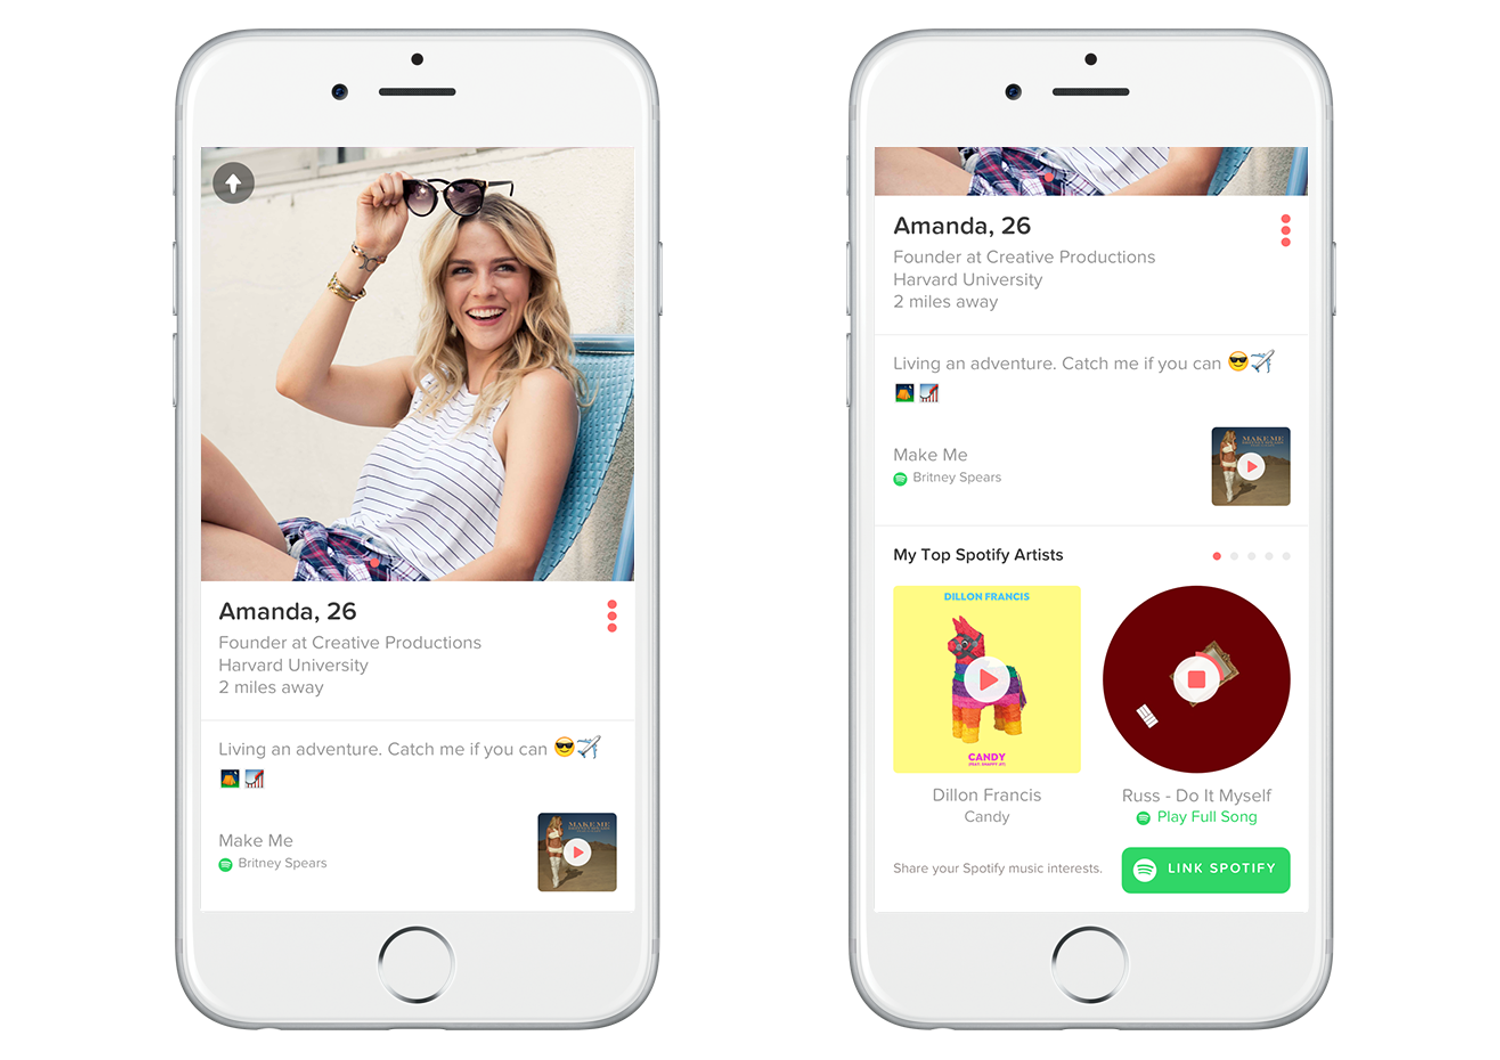 La musica giusta per rimorchiare, partnership Spotify-Tinder